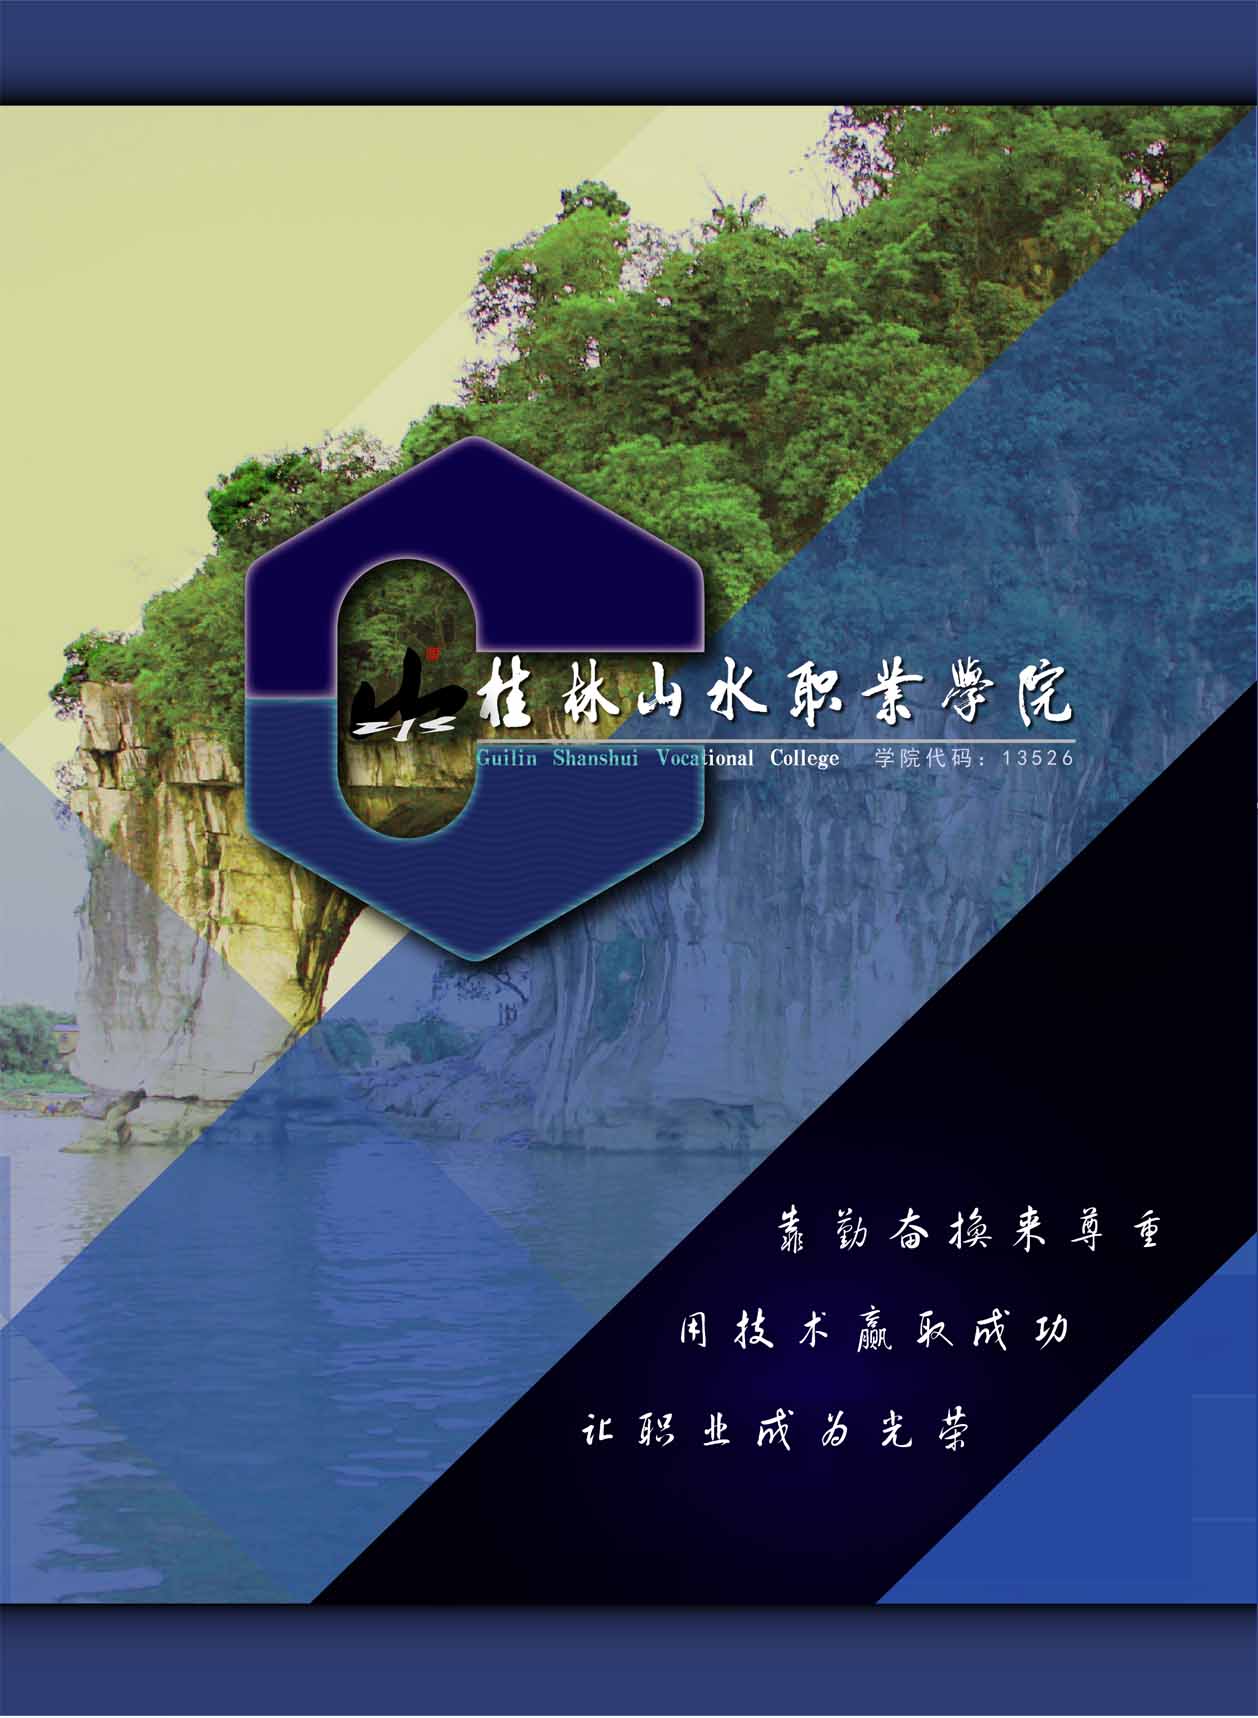 桂林山水职业学院2020年招生简章发布了